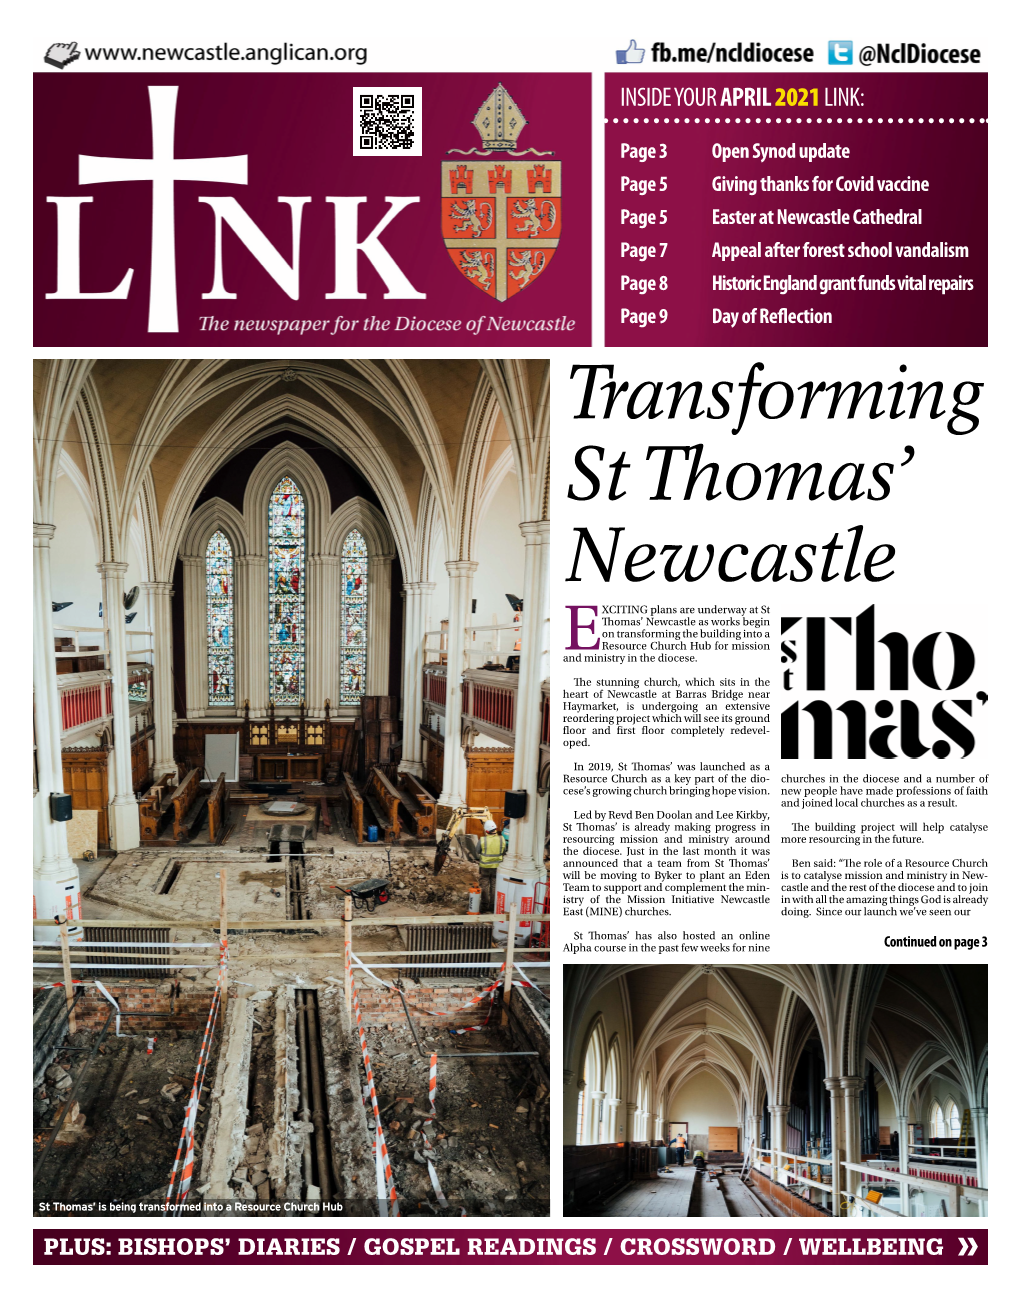 Transforming St Thomas' Newcastle